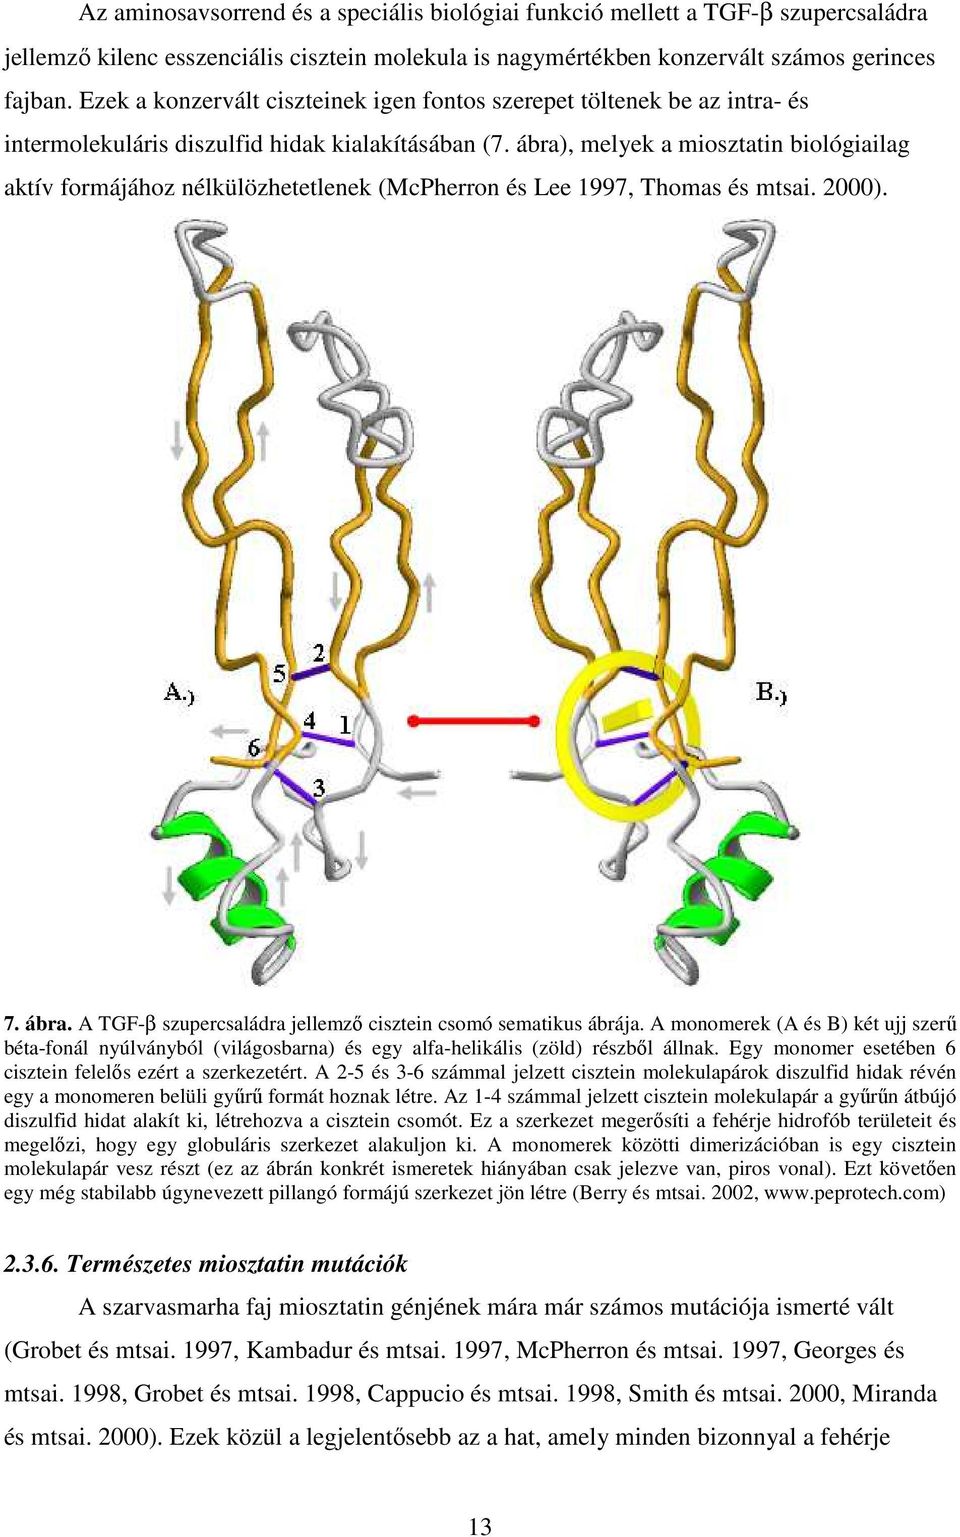 ábra), melyek a miosztatin biológiailag aktív formájához nélkülözhetetlenek (McPherron és Lee 1997, Thomas és mtsai. 2000). 7. ábra. A TGF-β szupercsaládra jellemző cisztein csomó sematikus ábrája.